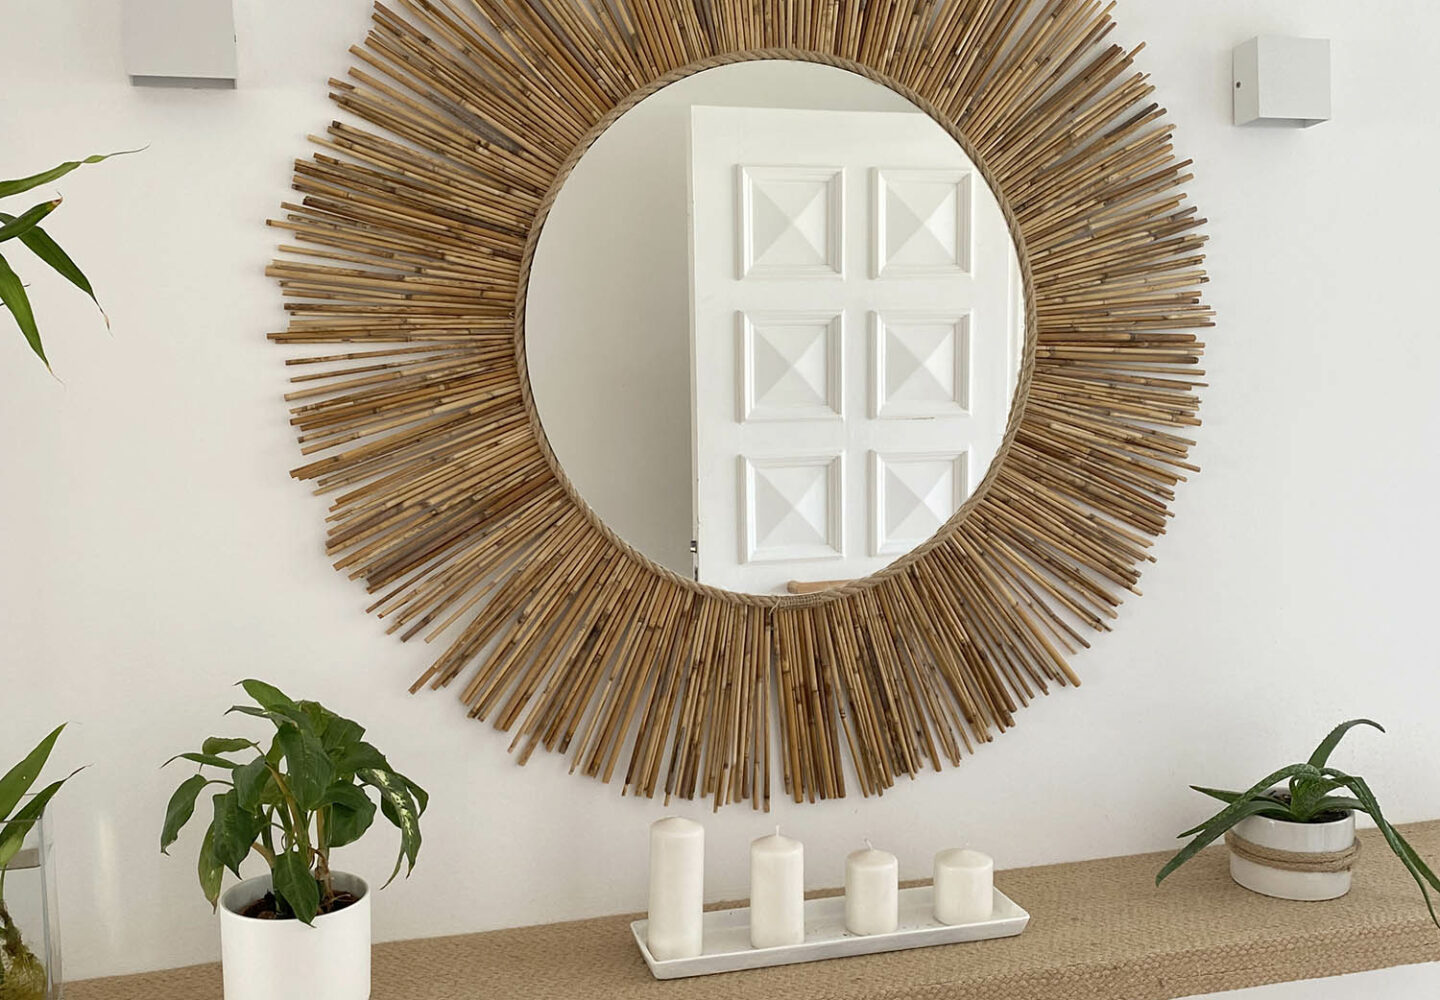 Transforma tu recibidor con un espejo artesanal Espejos Artesanales para una Entrada Única Decoración Natural con Espejos de Bambú Cómo Transformar tu Recibidor con Yute y Rafia